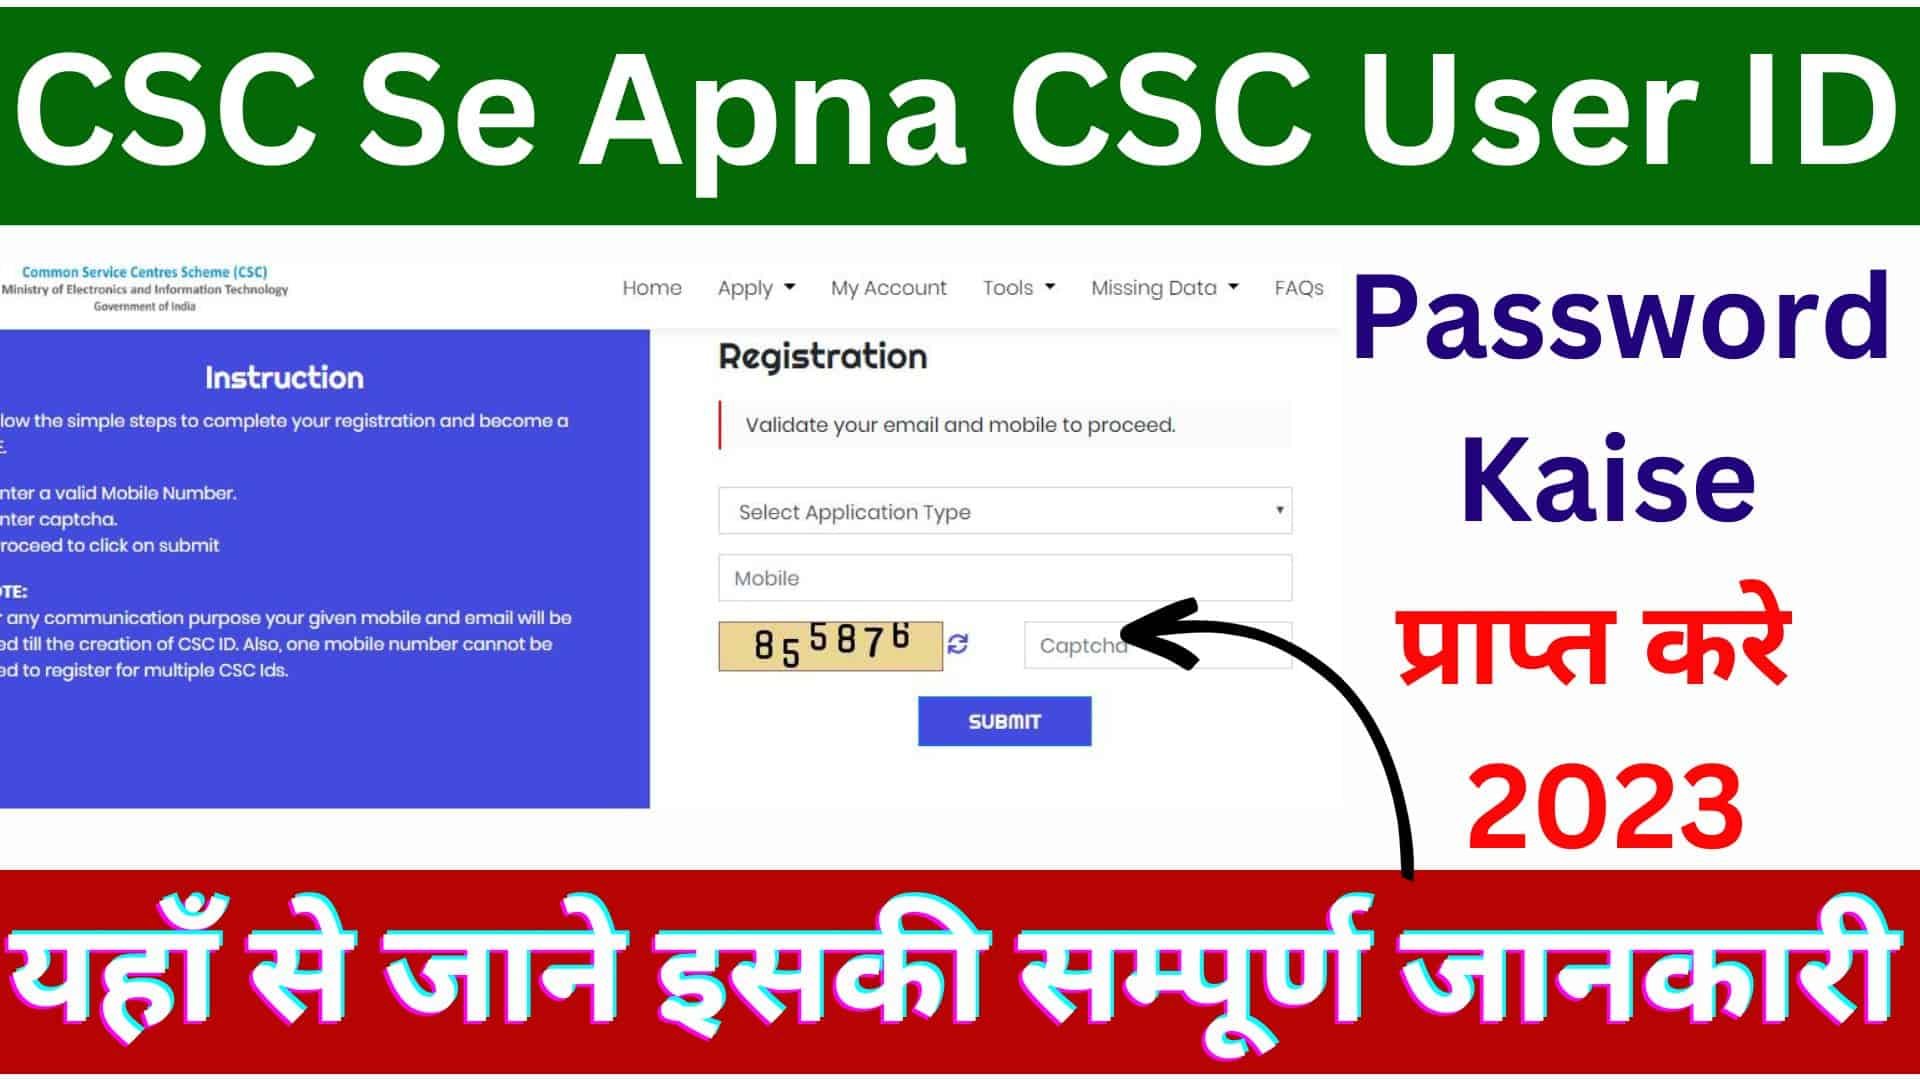 CSC Se Apna CSC User ID Password Kaise प्राप्त करे 2023 : यहाँ से जाने इसकी सम्पूर्ण जानकारी